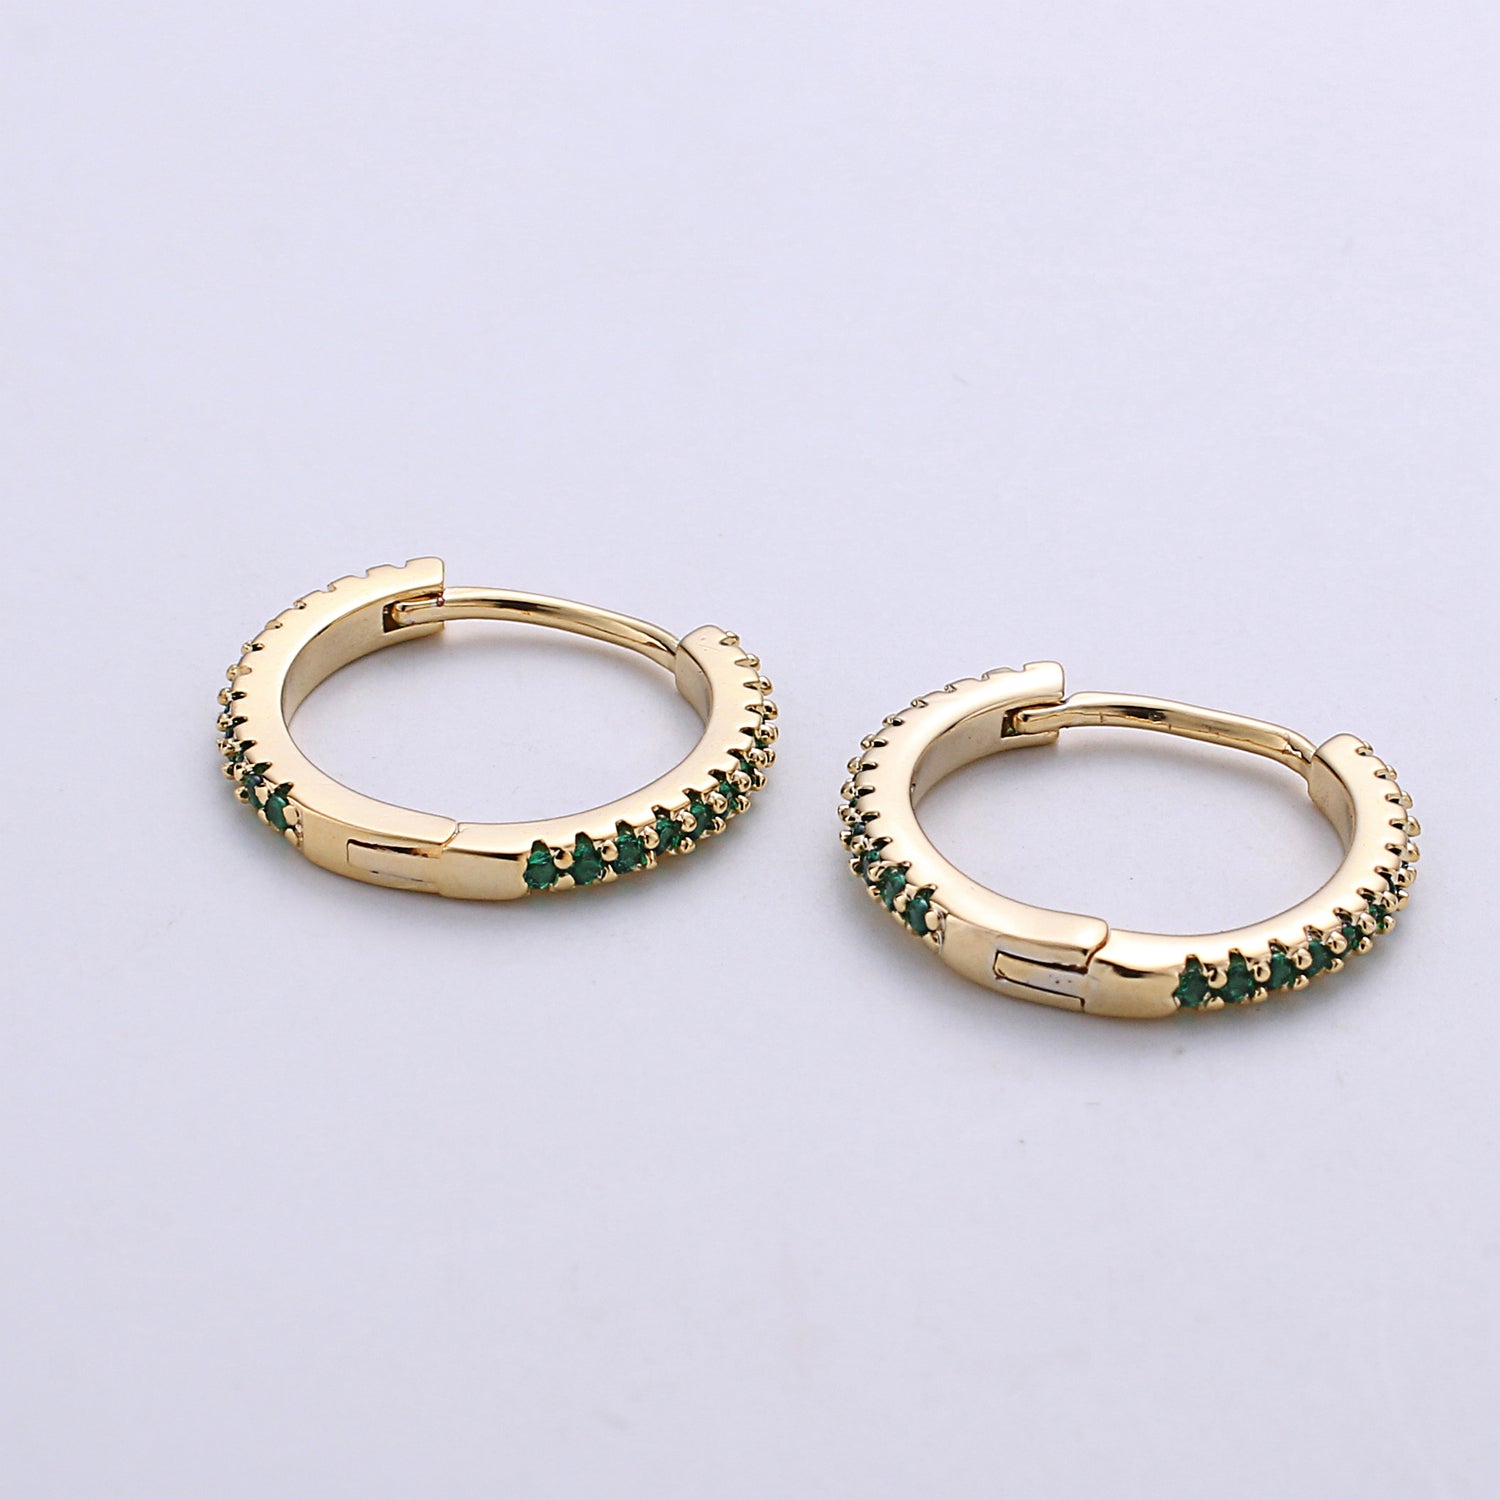 1 pair Gold hoop earrings - huggie hoops earrings - Dainty hoops Earring - Tiny hoops - Thin hoops - Minimalist Jewelry Micro Pave Earring - DLUXCA